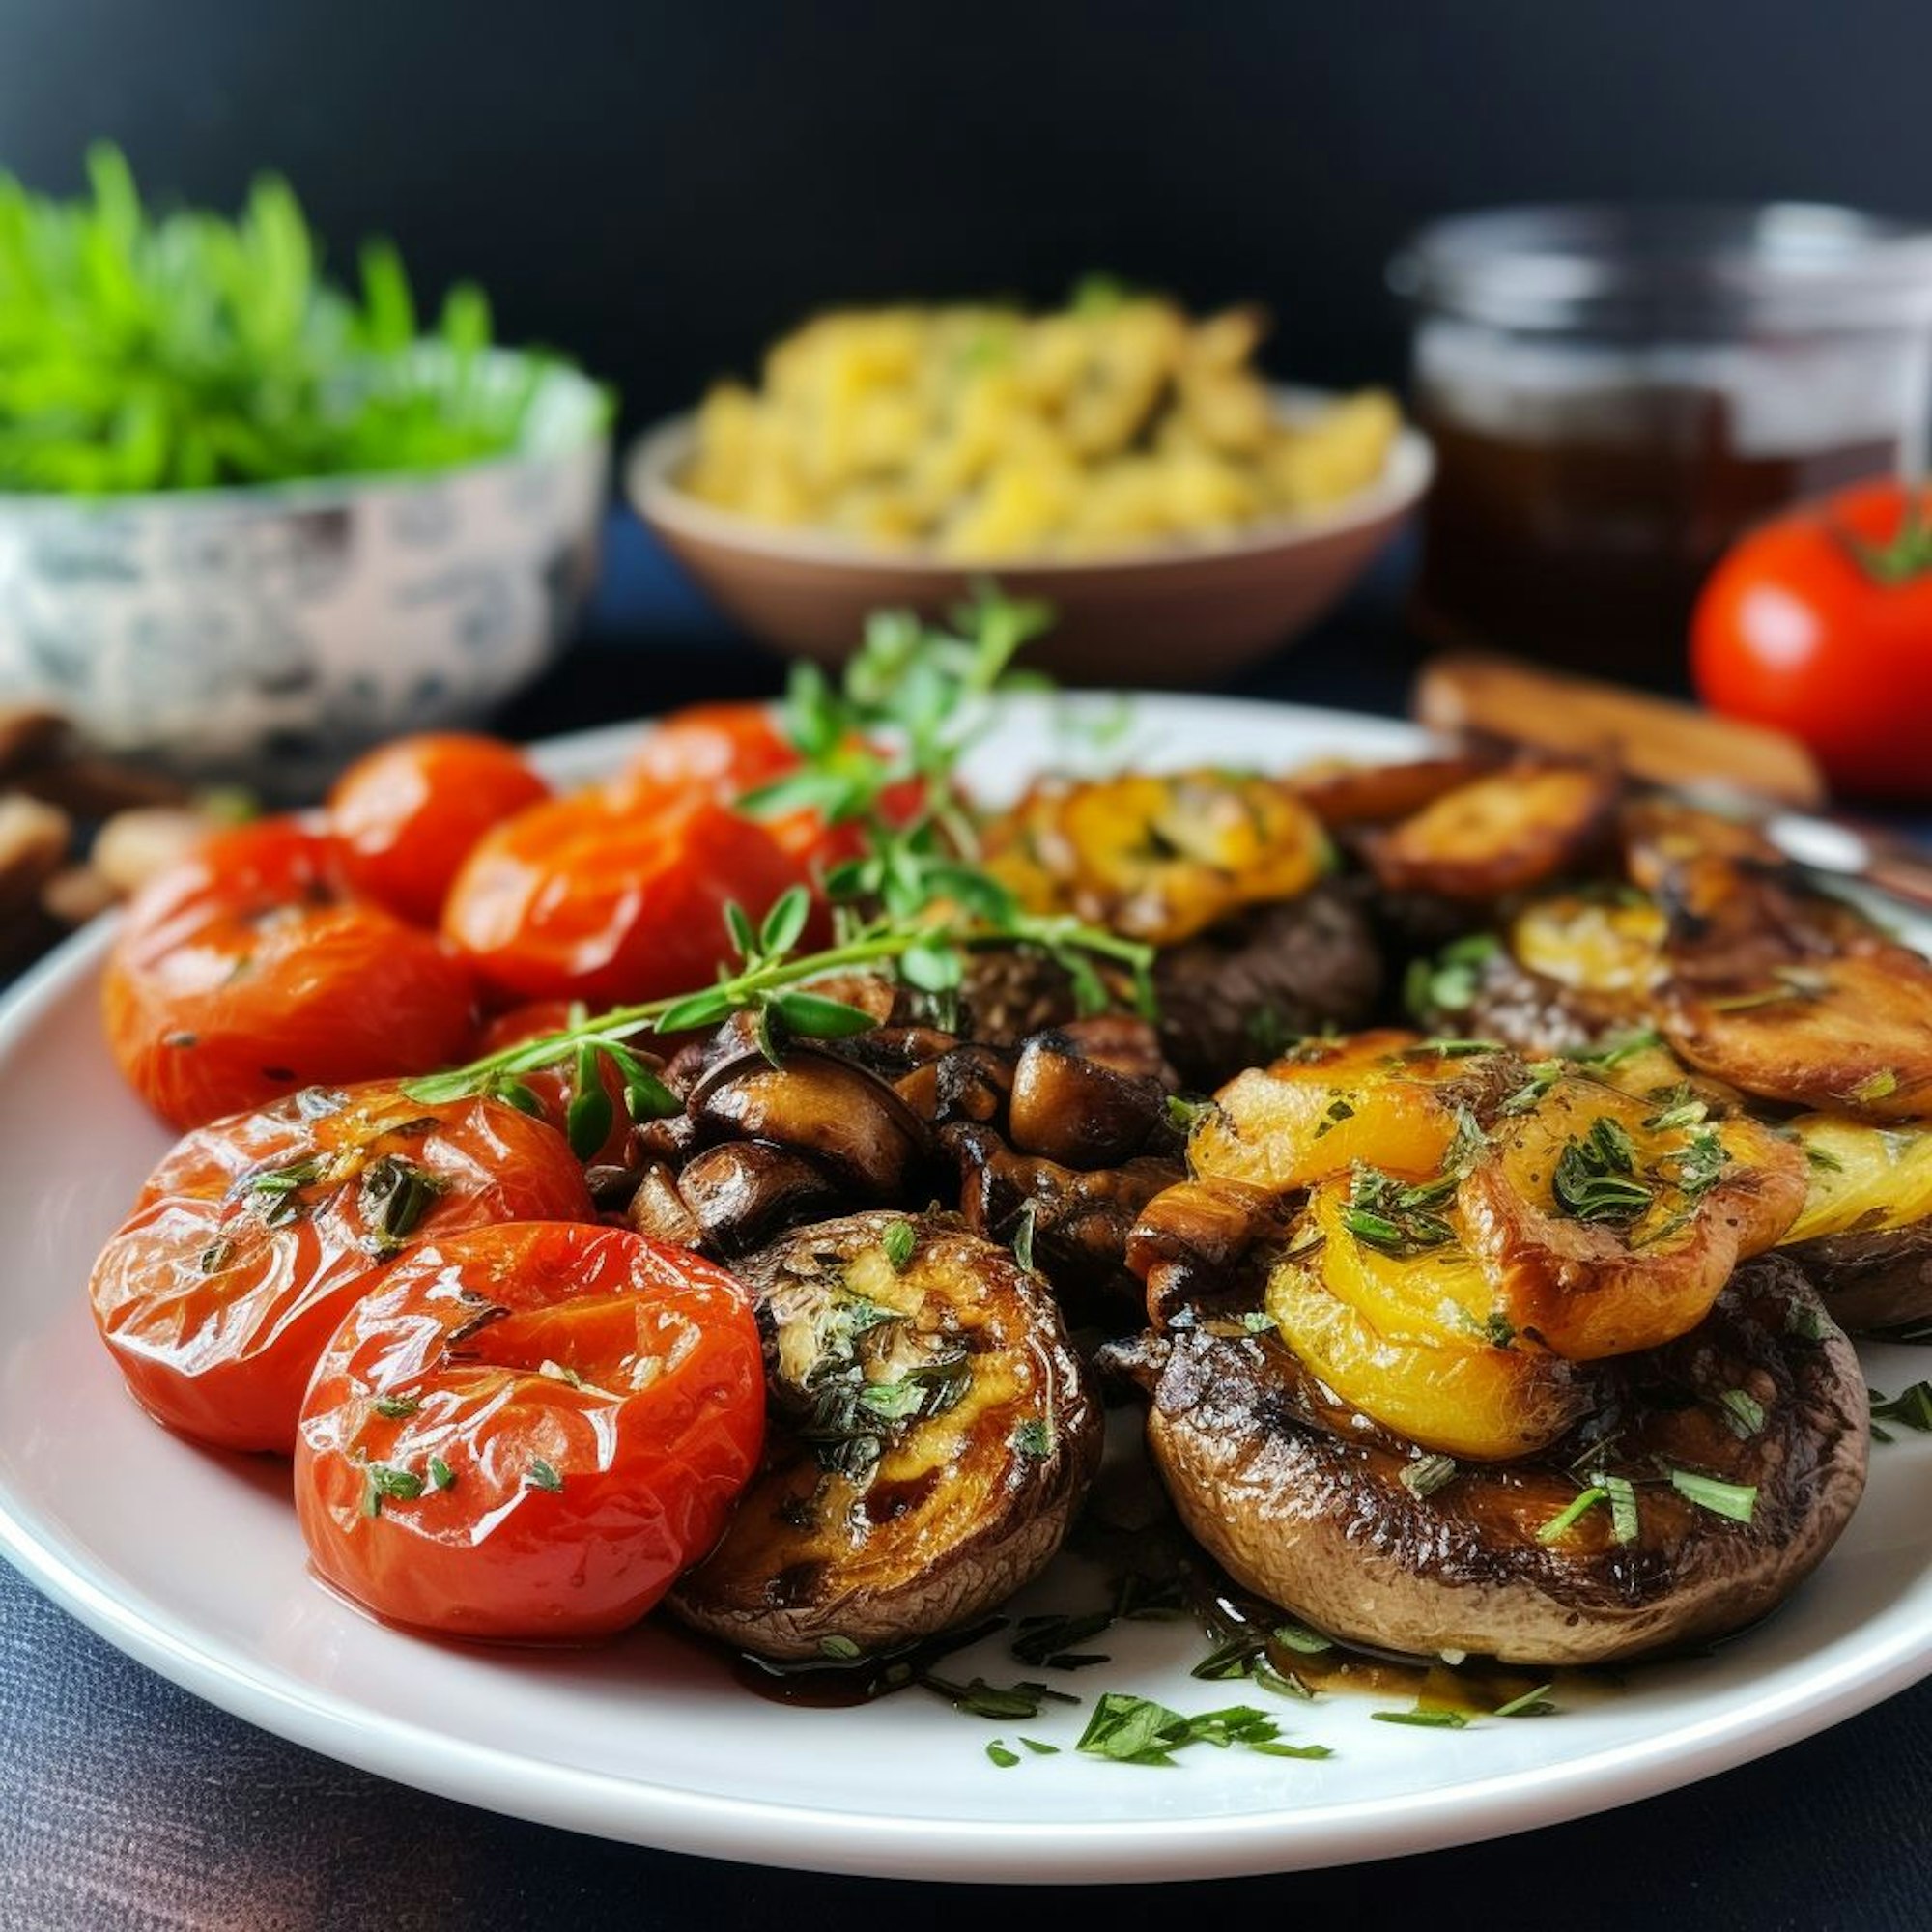 Festliches Veganes Menü: Knoblauch-Rosmarin-Kartoffelgratin, Gebratene Pilze mit Balsamico-Glasur und Marinierte Tomaten-Salatvariation
